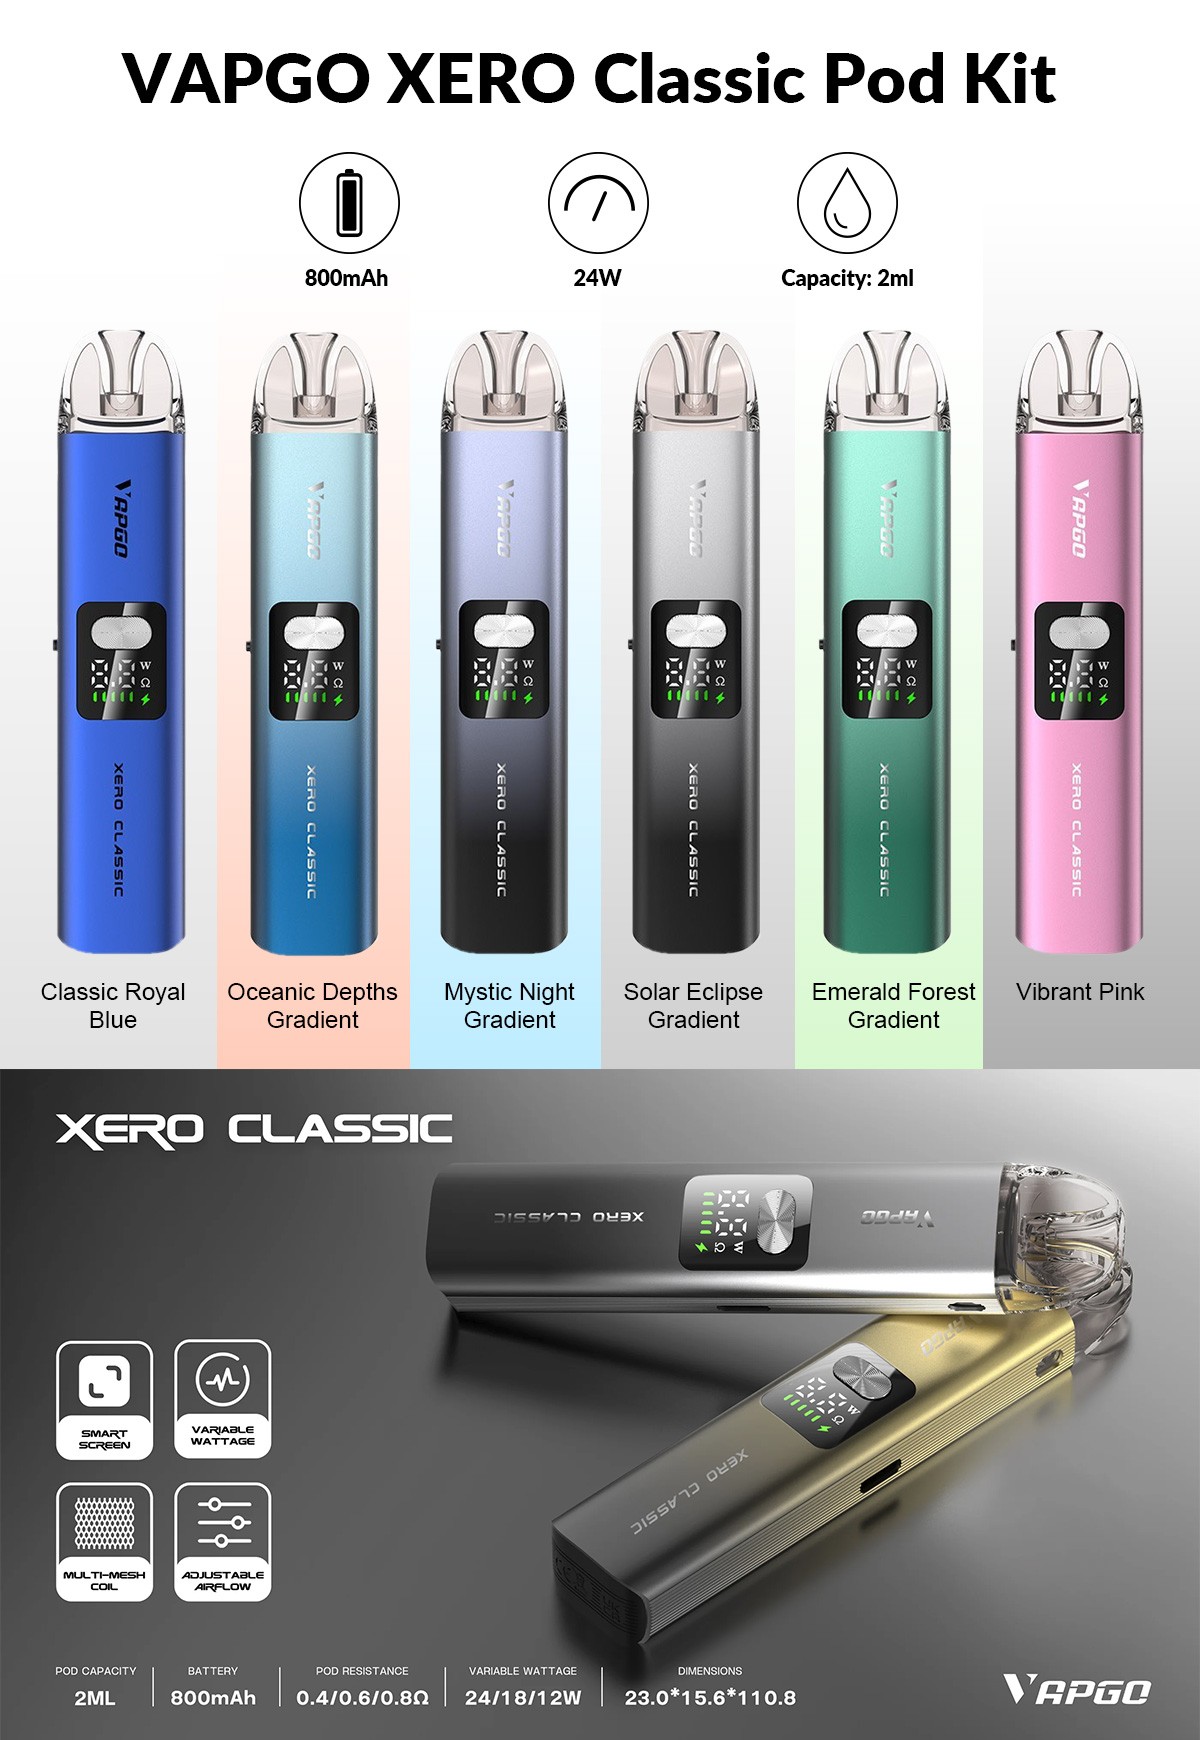 VAPGO XERO Classic Pod Kit